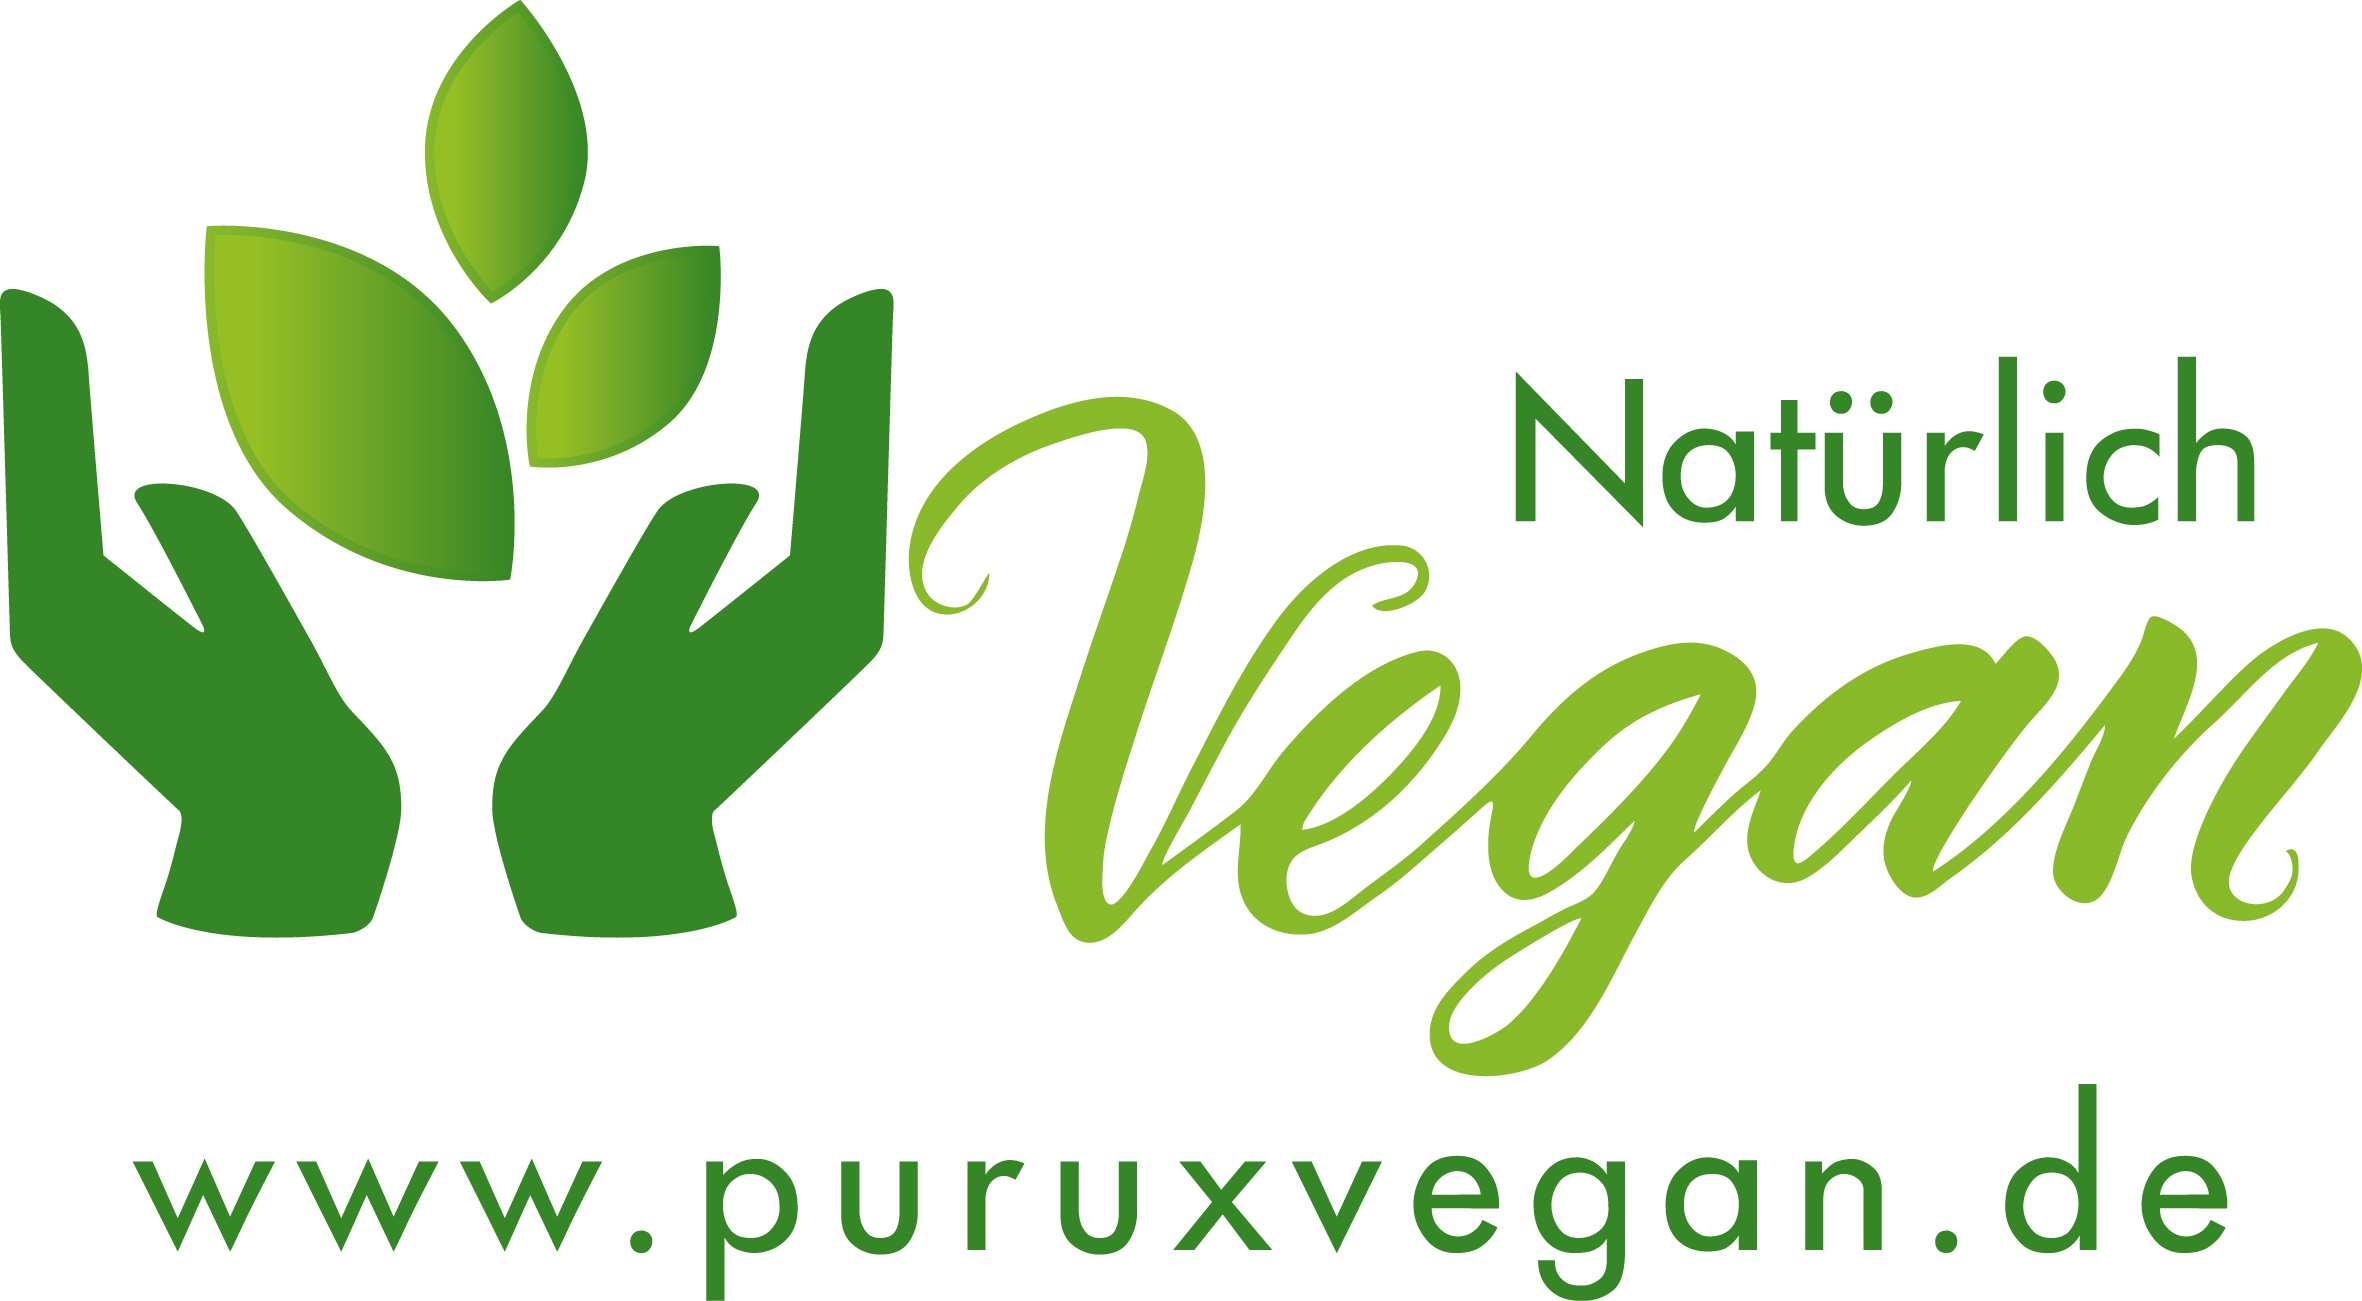 purux vegan in leichter Sprache